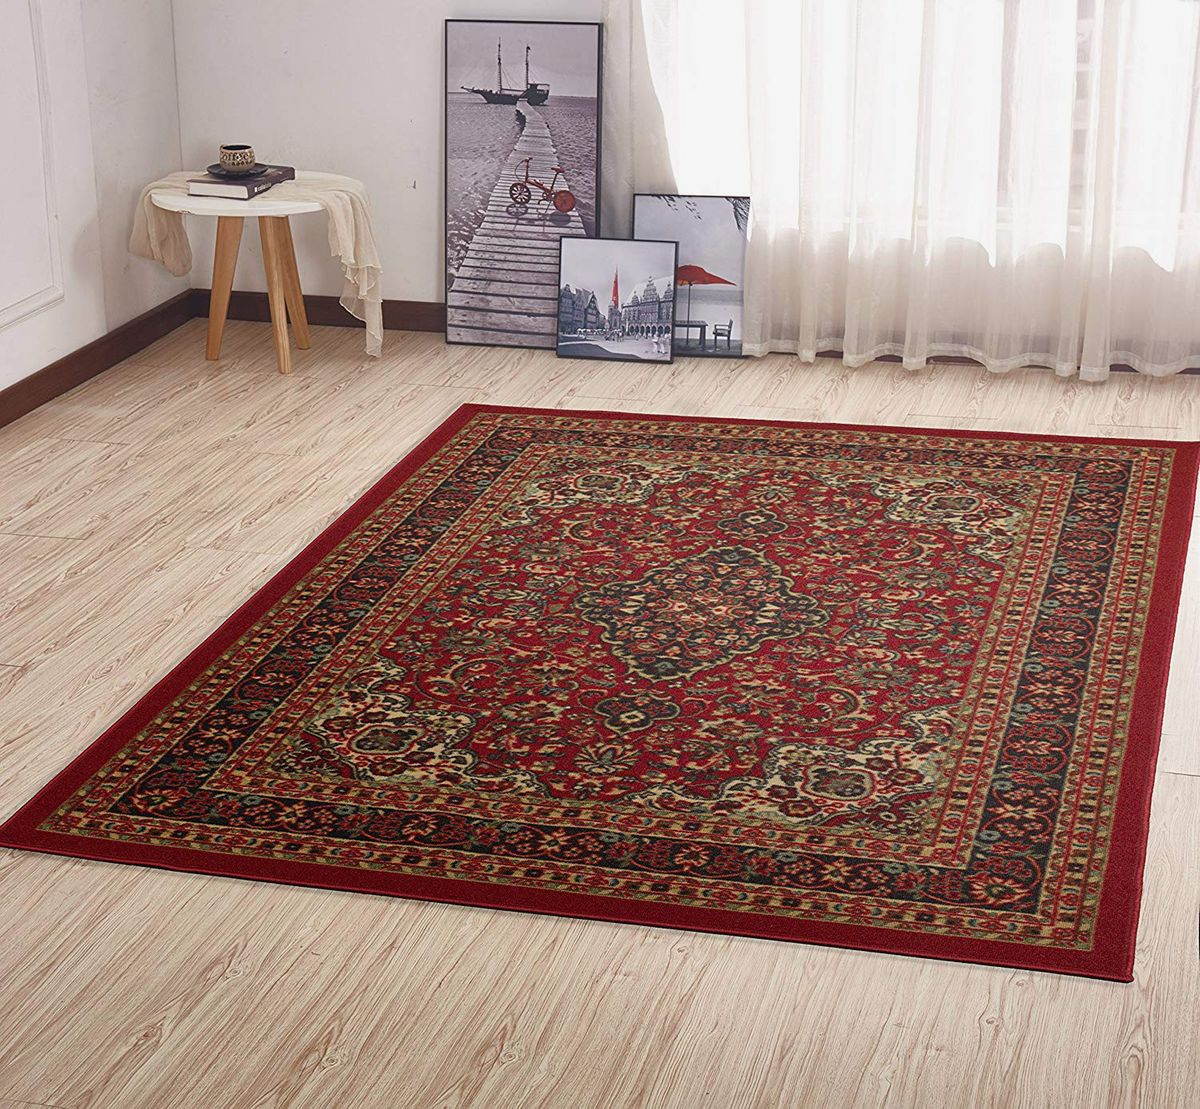 Small Persian Rug 2.4x4.6 ft,small runner rug,moroccan rug,colorful rug,decorative rug,small vintage rug,bedside rug,turkish rug,kilim rug